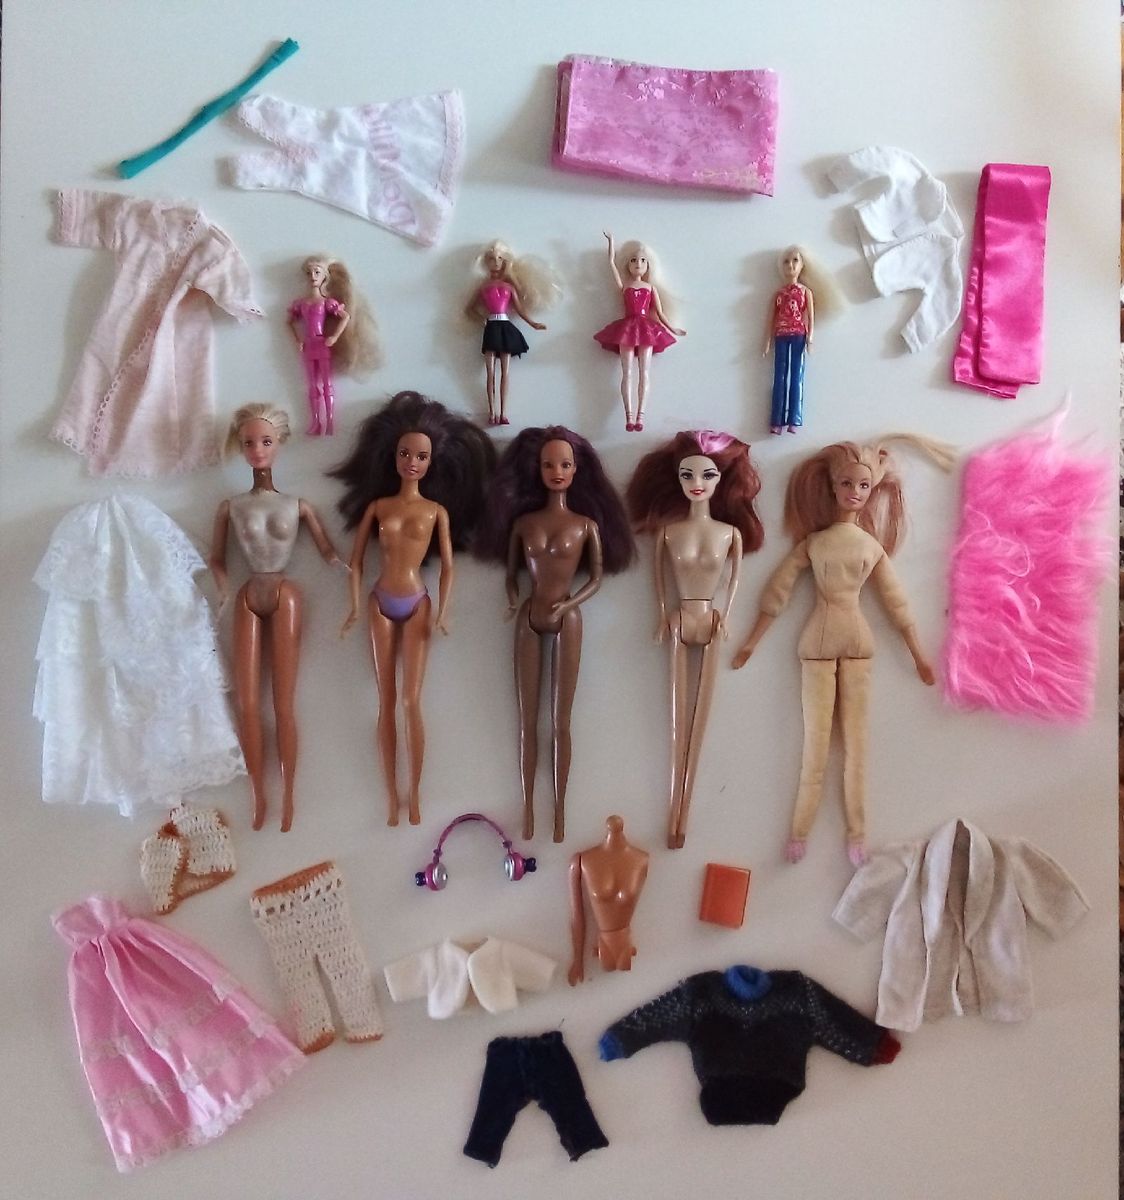 Lote de roupas da boneca Barbie (2) - Taffy Shop - Brechó de brinquedos